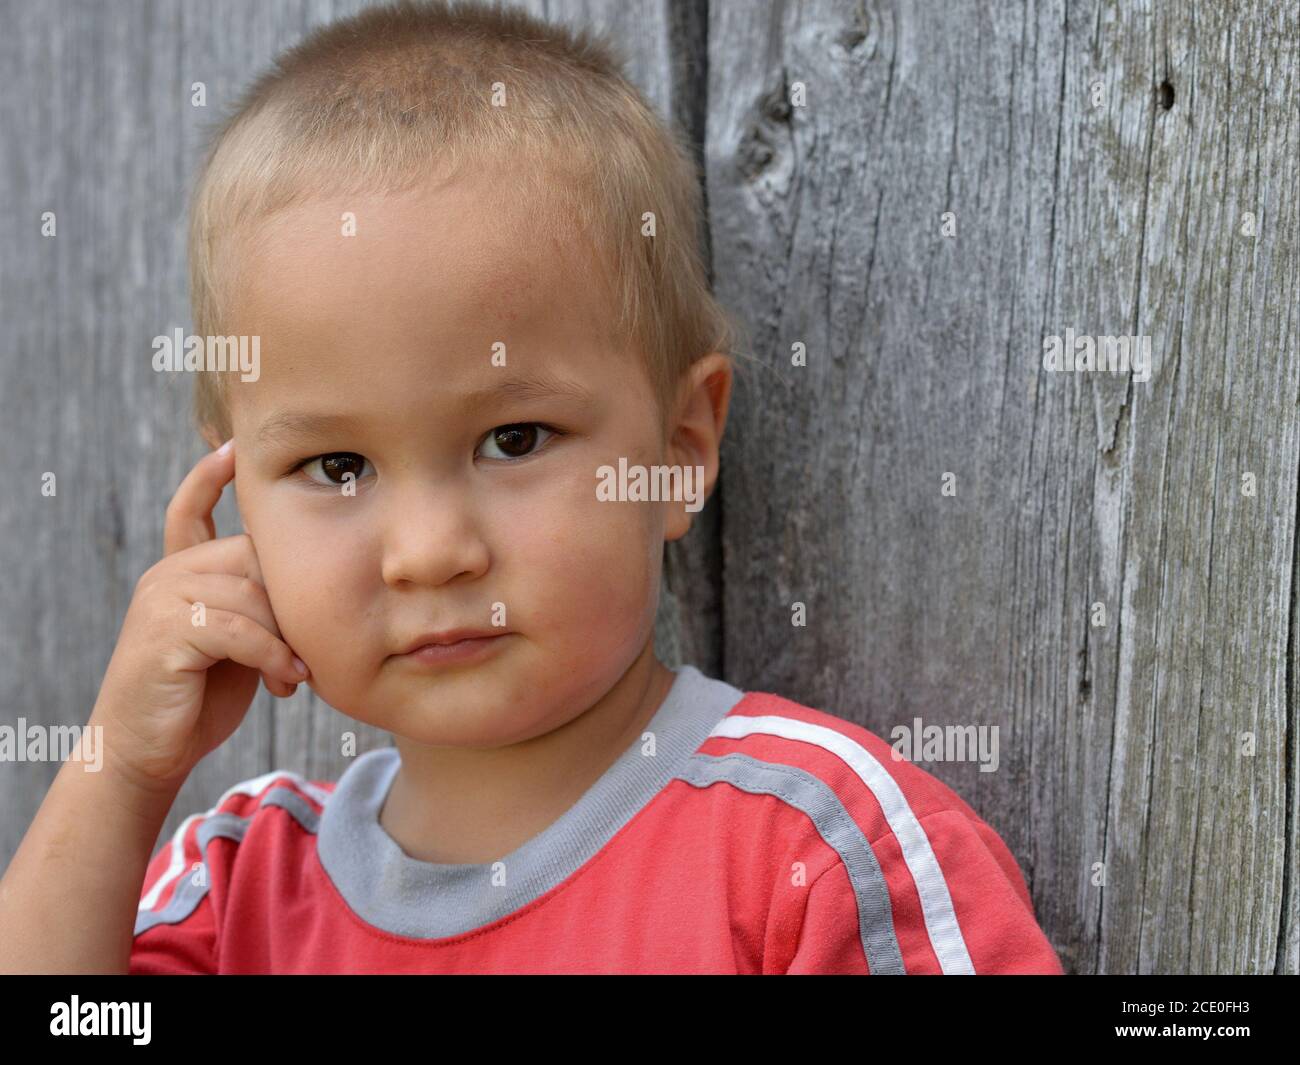 Lindo niño pequeño de raza mixta (caucásico y asiático oriental) posan para la cámara con su mano hacia su mejilla (postura pensante). Foto de stock